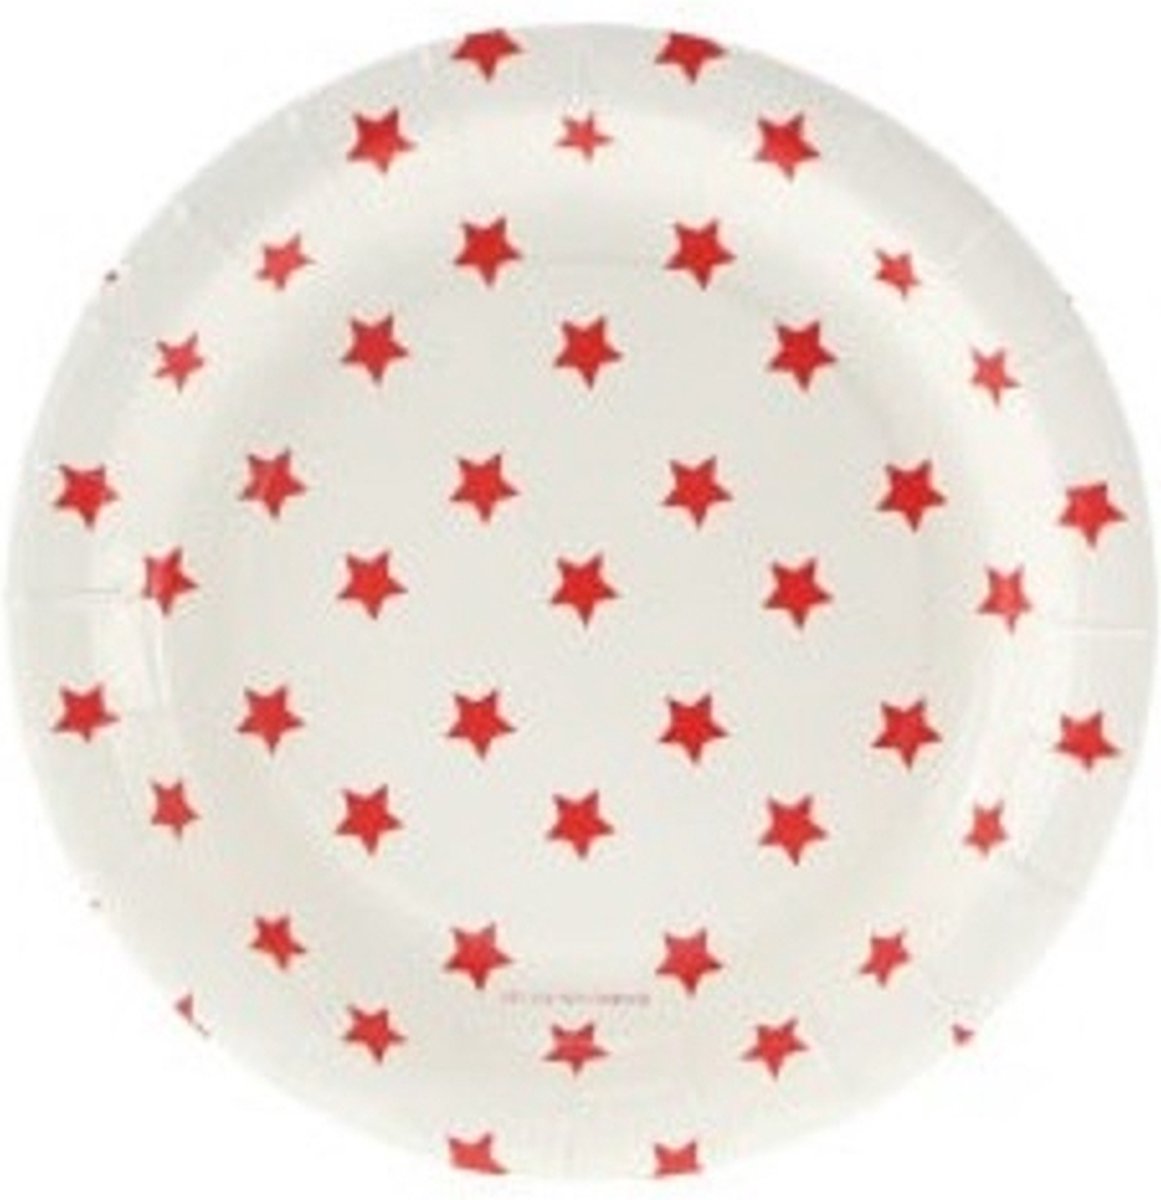 Ronde witte kartonnen bordjes met rode sterren - 12 stuks - kartonnen gebaksbordjes